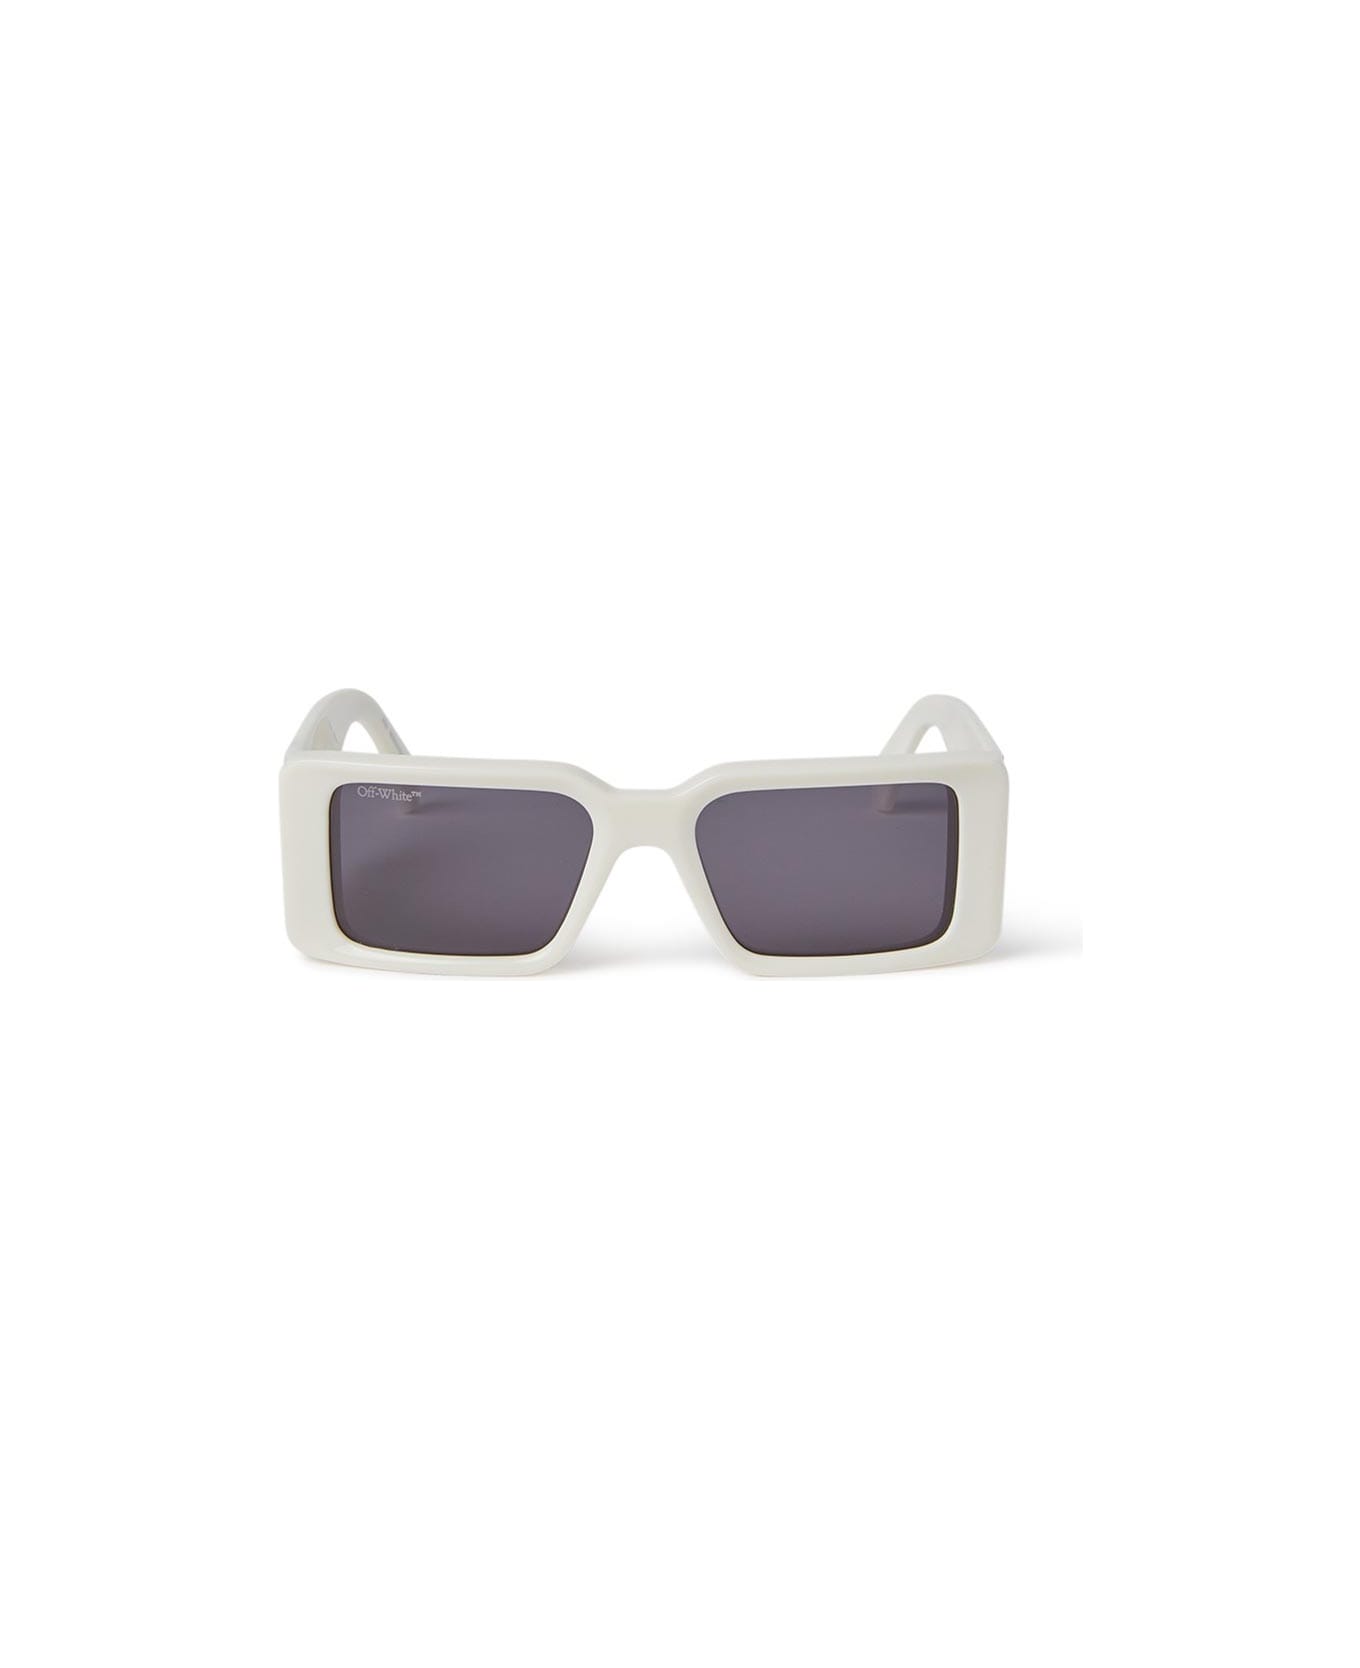 Off-White Milano Sunglasses - 0107 WHITE